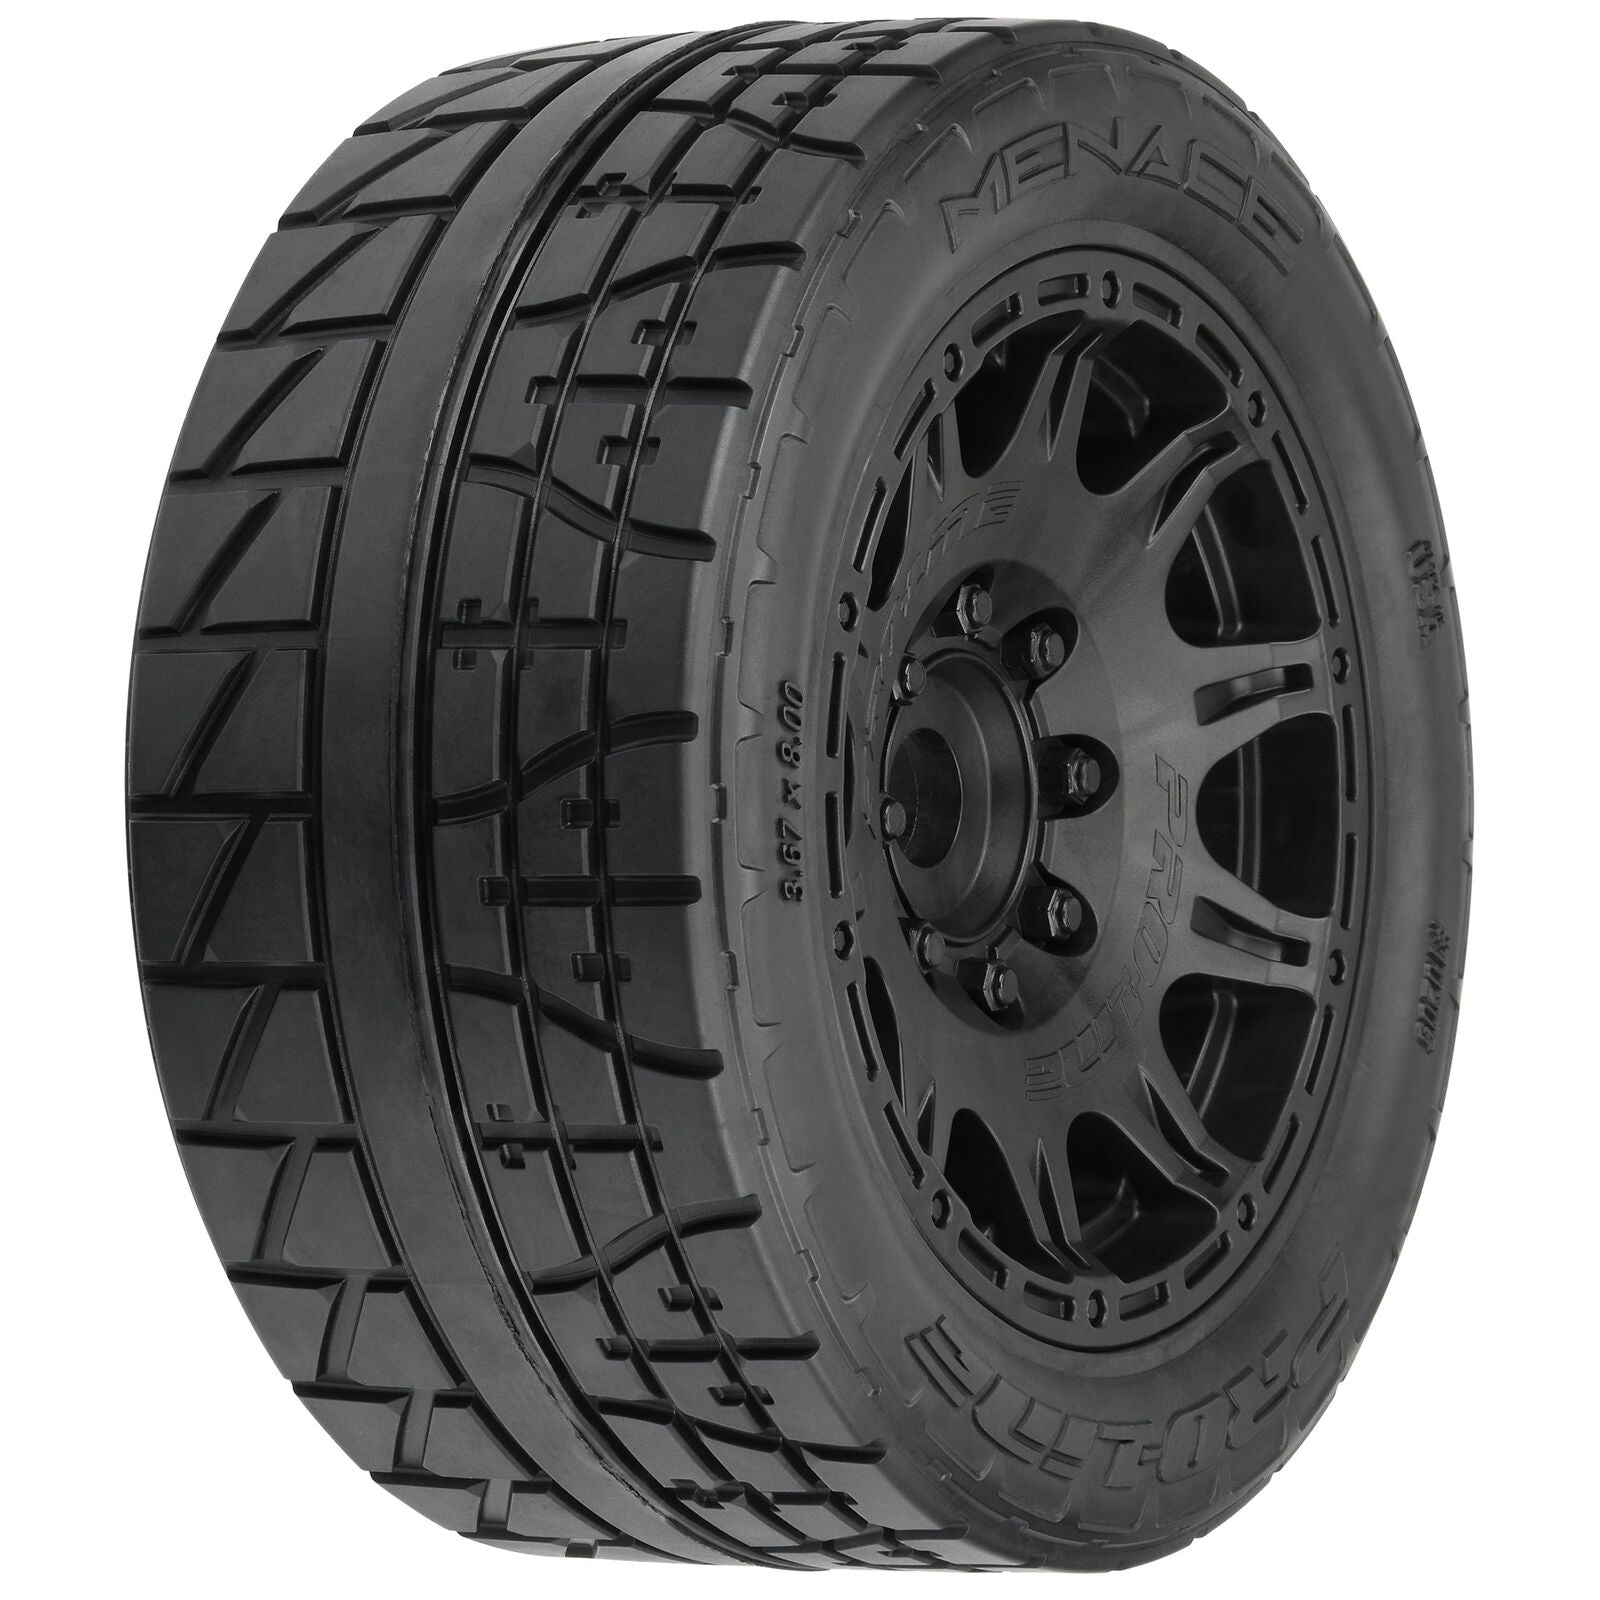 PROLINE 10205-10 1/6 Menace HP BELTED Fr/Rr 5.7" MT Tires Mounted 24mm Blk Raid (2)